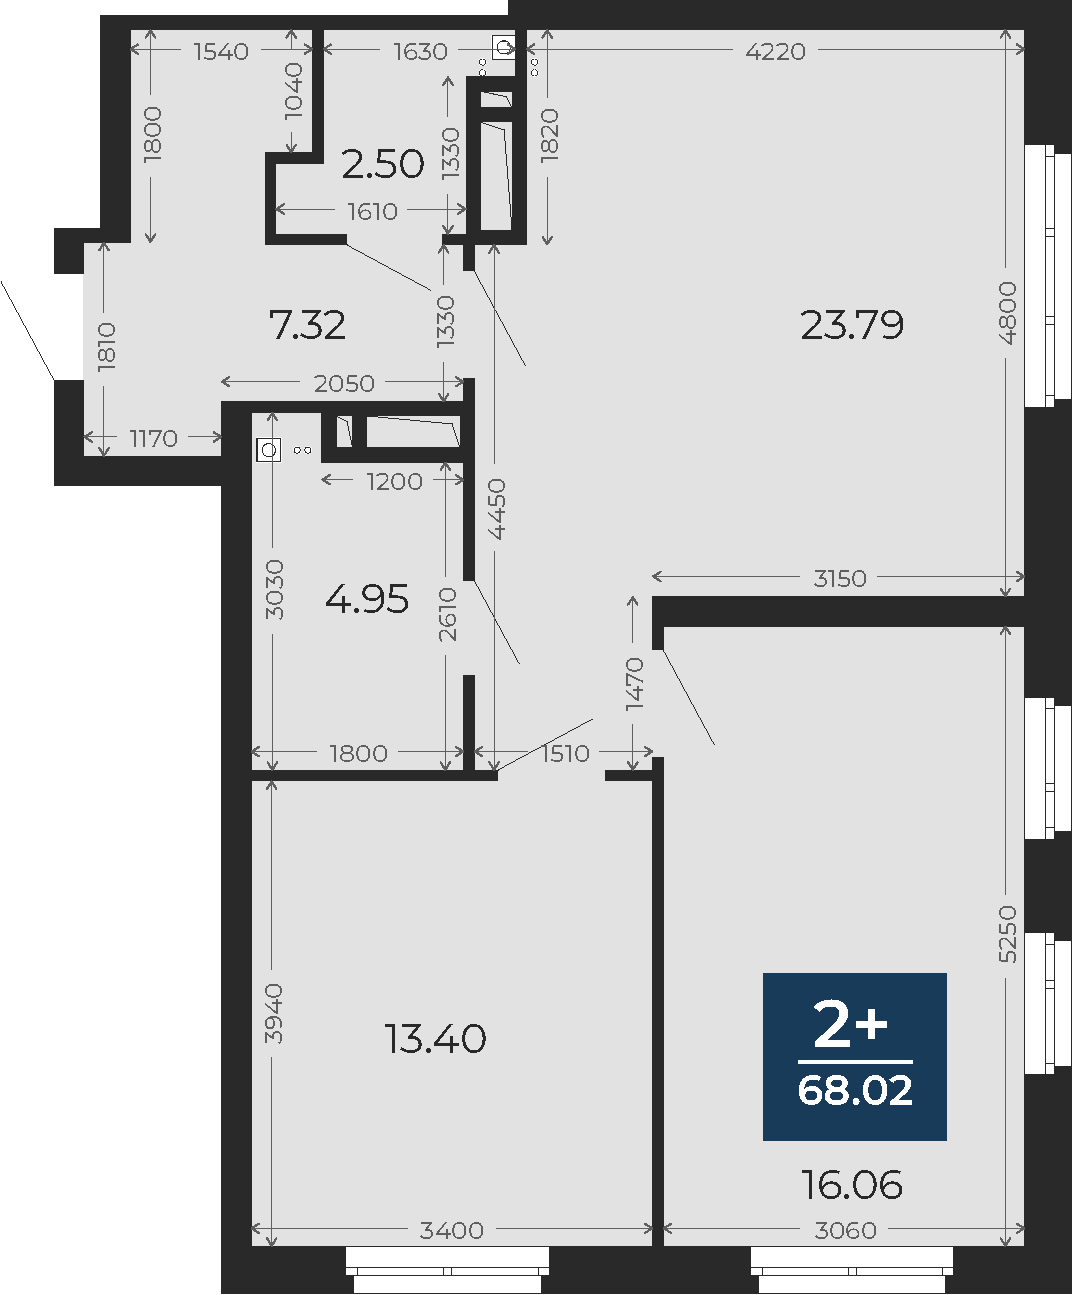 Квартира № 162, 2-комнатная, 68.02 кв. м, 13 этаж